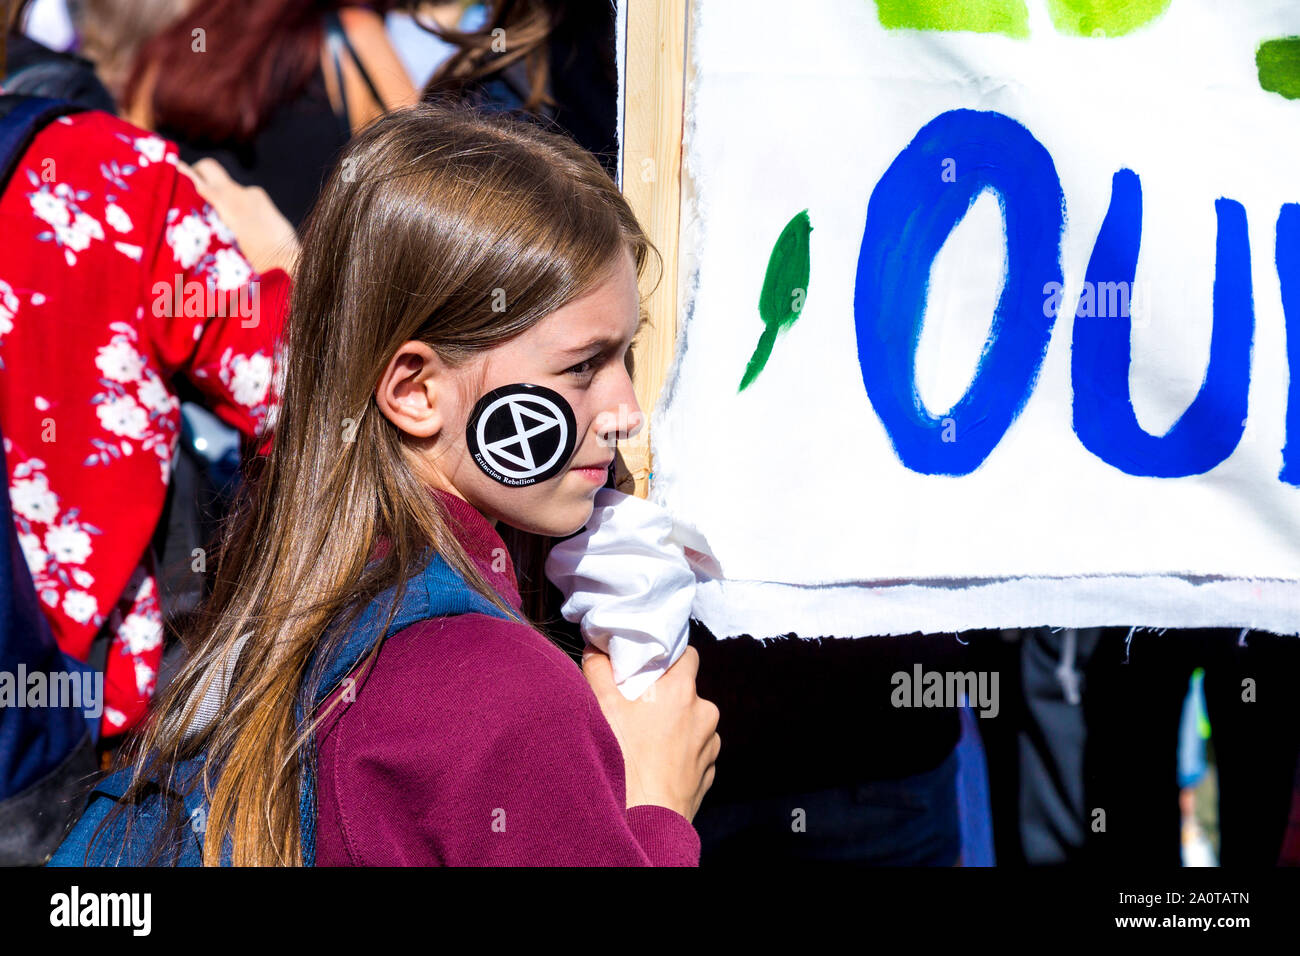 20 septembre 2019, Londres, Royaume-Uni - Jeune fille avec une rébellion Extinction autocollant sur son visage tenant une bannière dans le climat mondial grève dans Westminster Banque D'Images